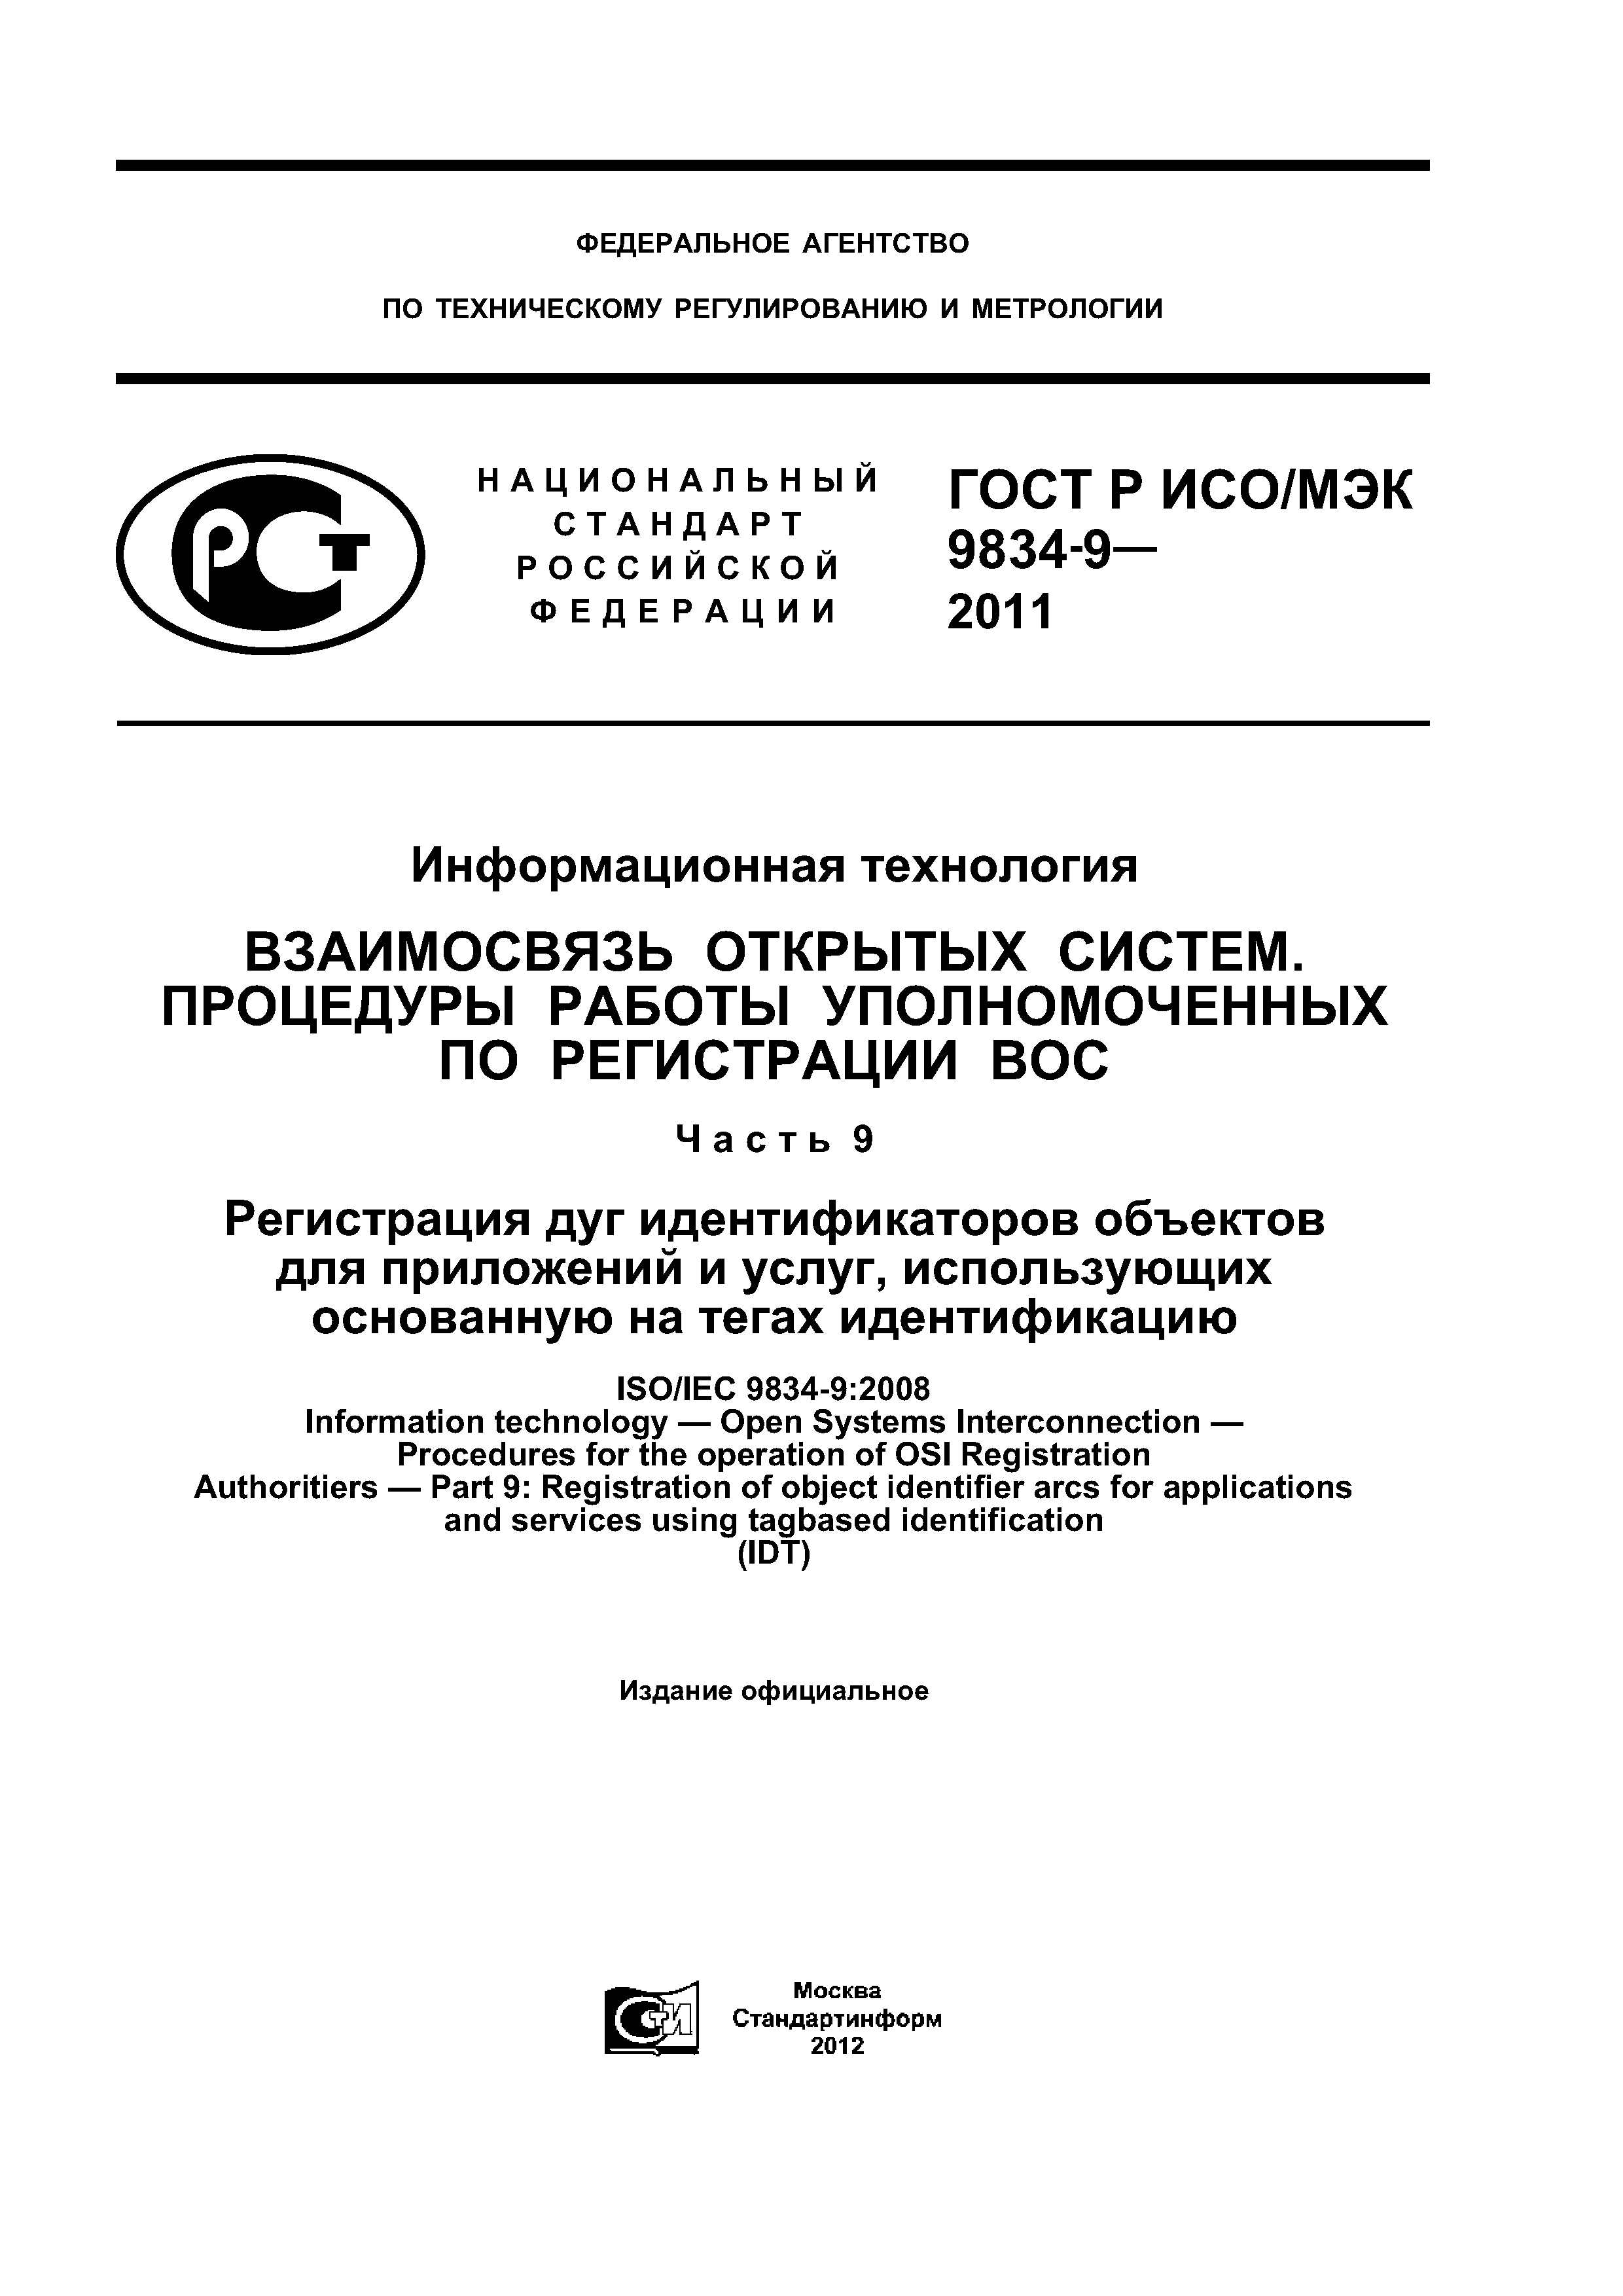 ГОСТ Р ИСО/МЭК 9834-9-2011